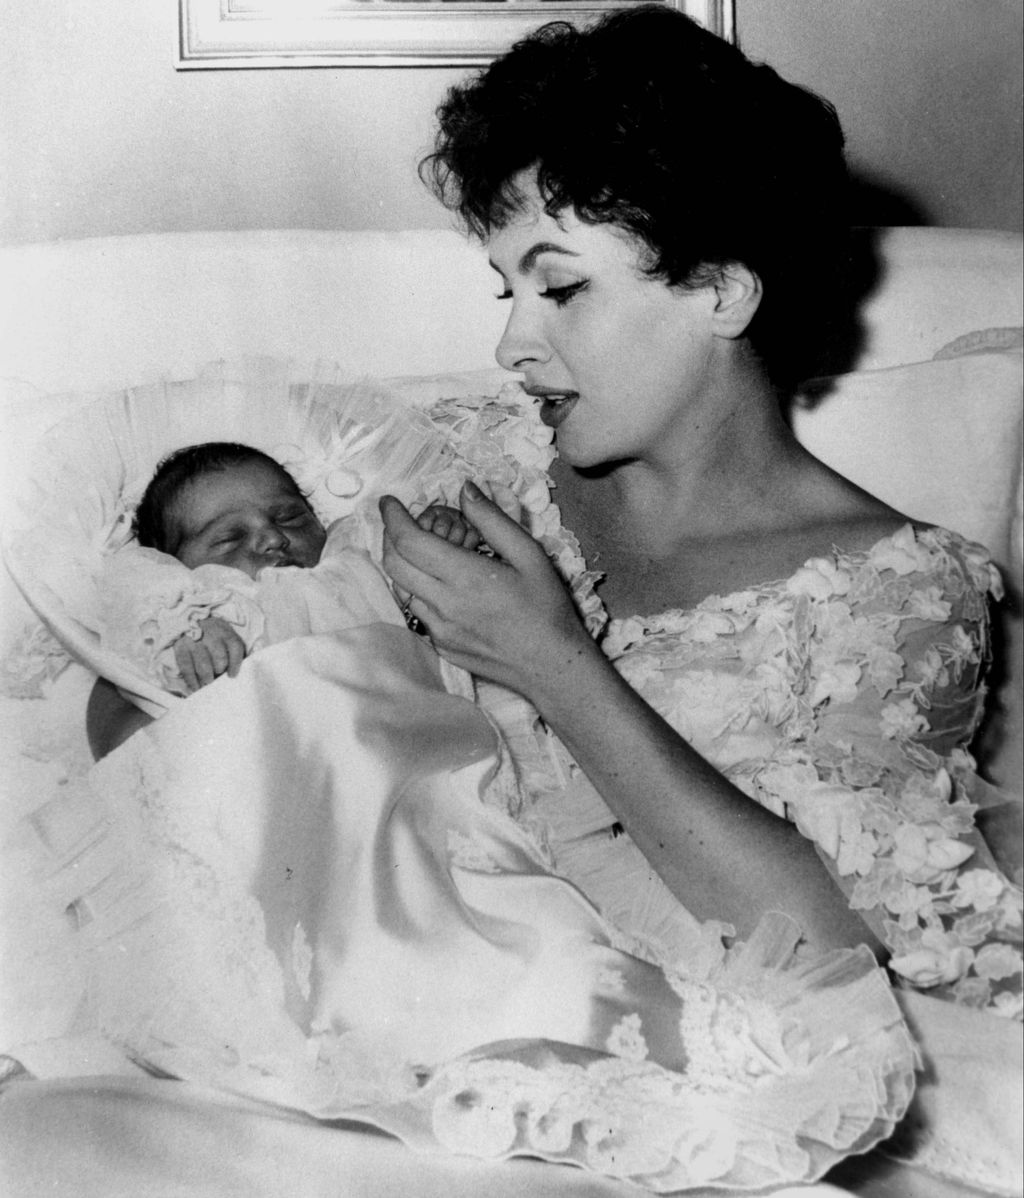 هكذا كانت الممثلة مع ابنها بعد وقت قصير من الولادة